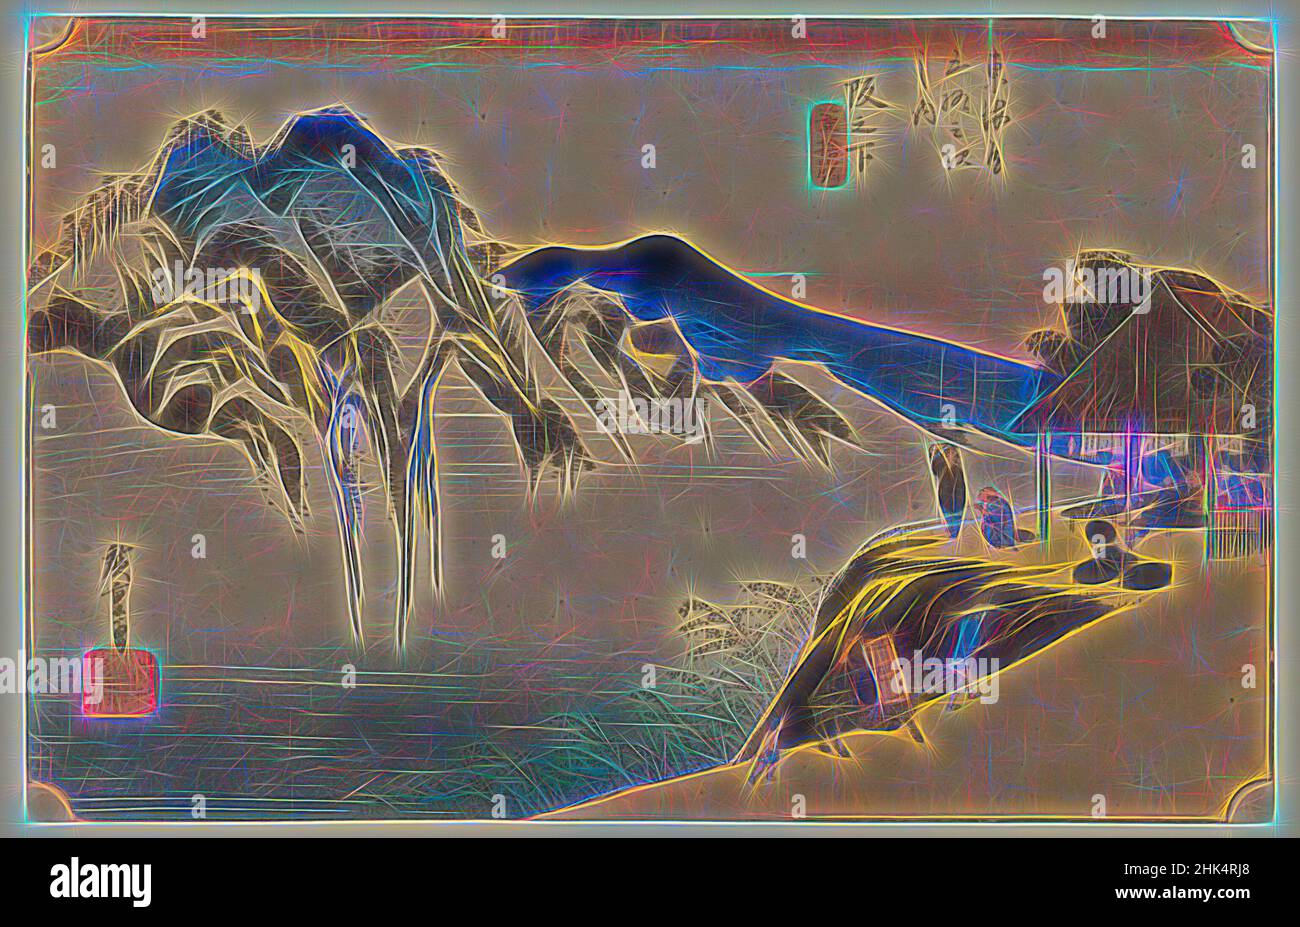 Inspiriert von Sakanoshita: Fudesute Mountain, aus der Serie 53 Stationen der Tōkaidō Road, erste Tokaido-Serie, pl. 49, Utagawa Hiroshige, Ando, Japanisch, 1797-1858, Farbholzschnitt auf Papier, Japan, ca. 1833-1834, Edo-Zeit, 8 7/8 x 13 3/4 Zoll, 22,5 x 35 cm, Ruhe, Fauna, Flora, von Artotop neu erfunden. Klassische Kunst neu erfunden mit einem modernen Twist. Design von warmen fröhlichen Leuchten der Helligkeit und Lichtstrahl Strahlkraft. Fotografie inspiriert von Surrealismus und Futurismus, umarmt dynamische Energie der modernen Technologie, Bewegung, Geschwindigkeit und Kultur zu revolutionieren Stockfoto